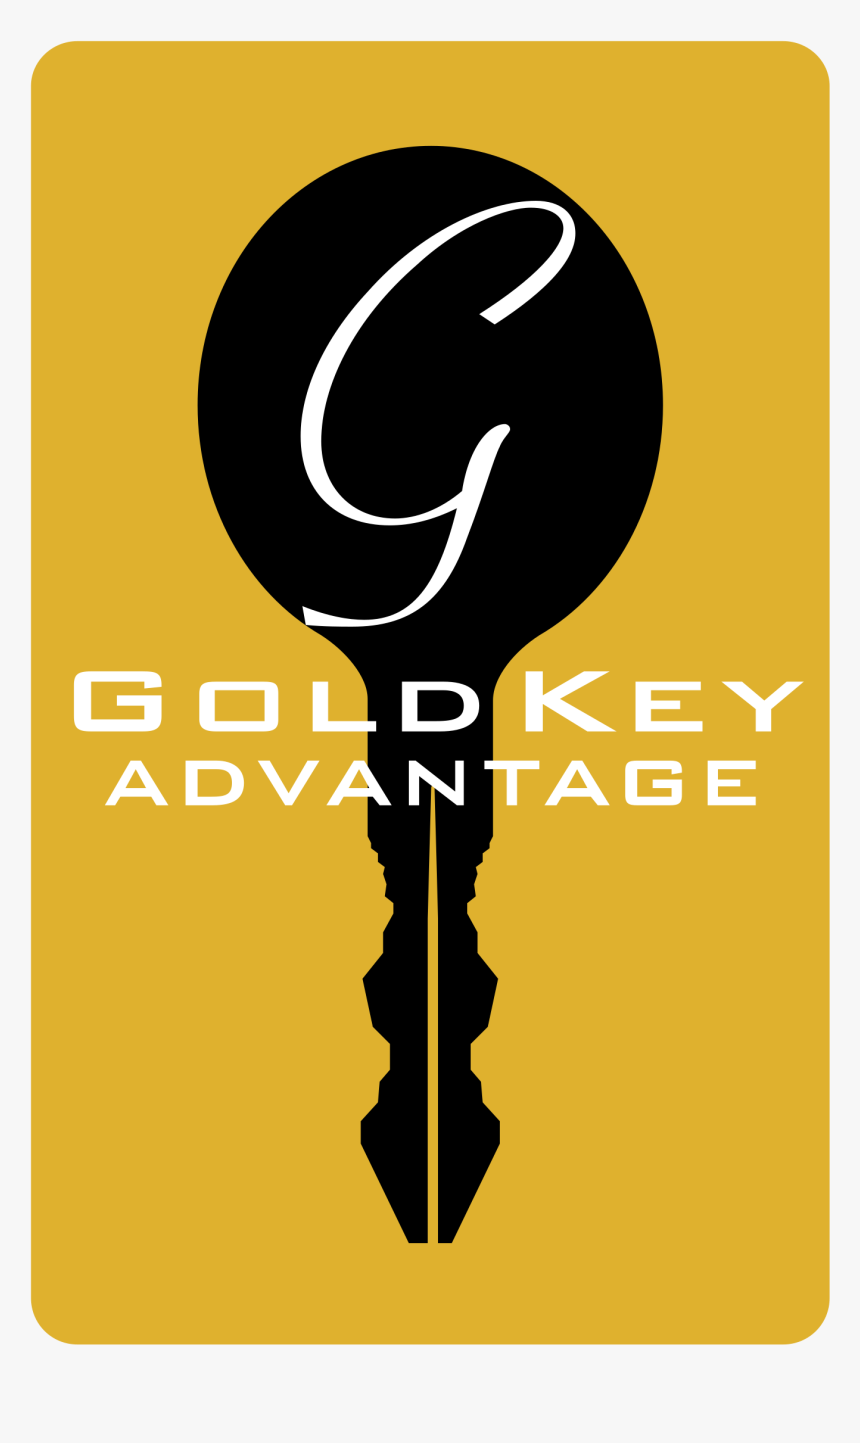 Gold Key Advantage Logo Png Transparent - Varg Veum Svarte Faar, Png Download, Free Download